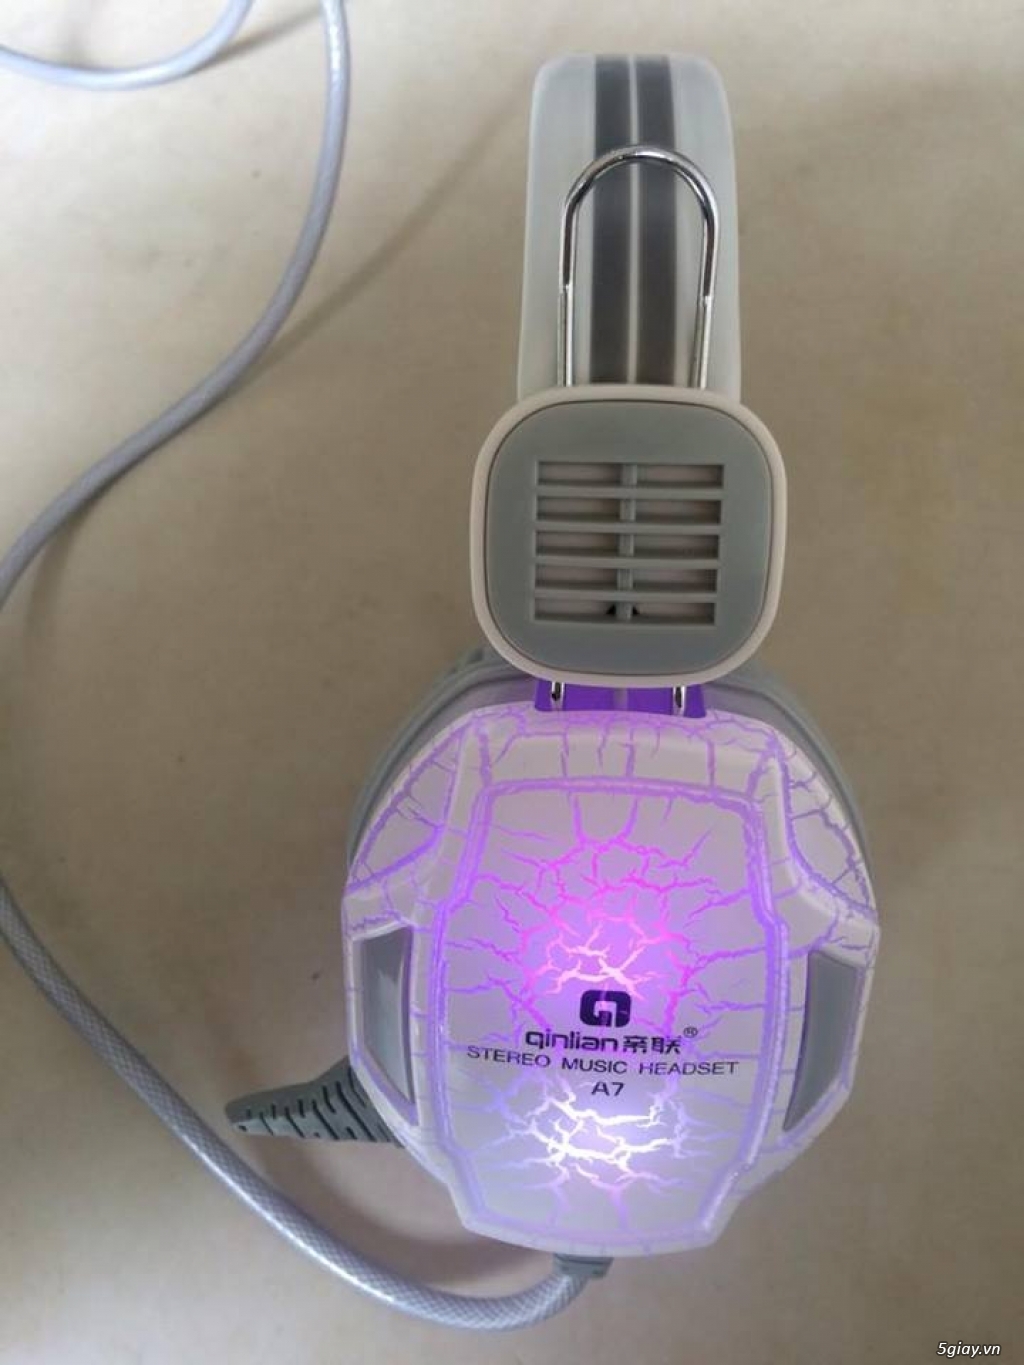 Bán lẻ rẻ như bán buôn, Tai nghe Qinlian a7 đèn LED, bền đẹp chất lượng giá rẻ